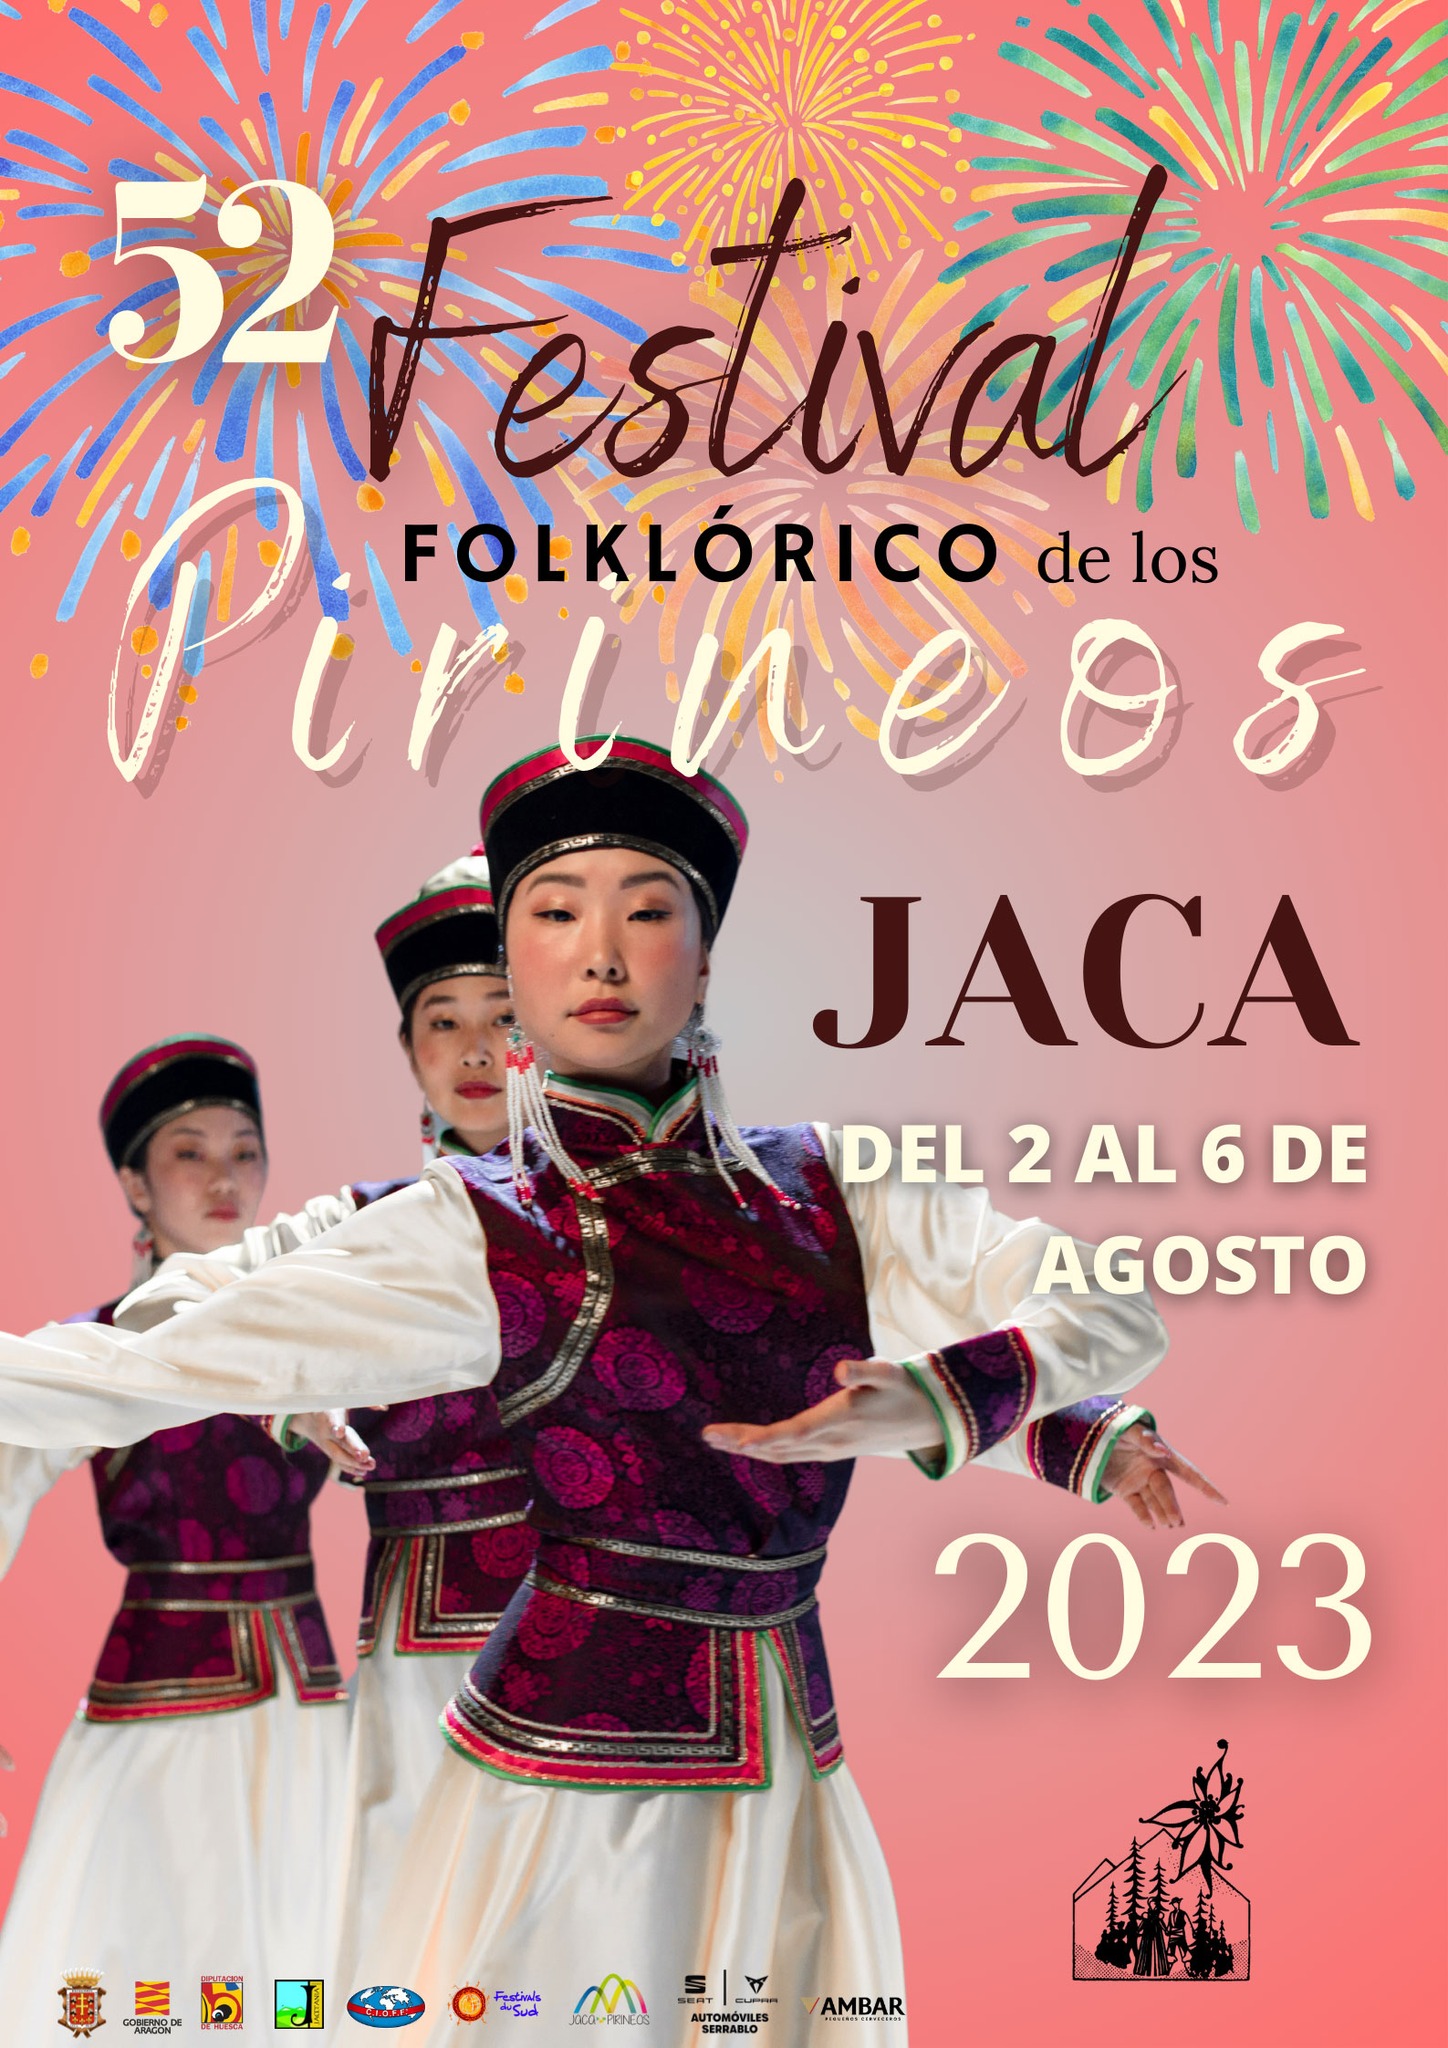 Jaca celebrar el 52 Festival Folklrico de los Pirineos del 2 al 6 de agosto